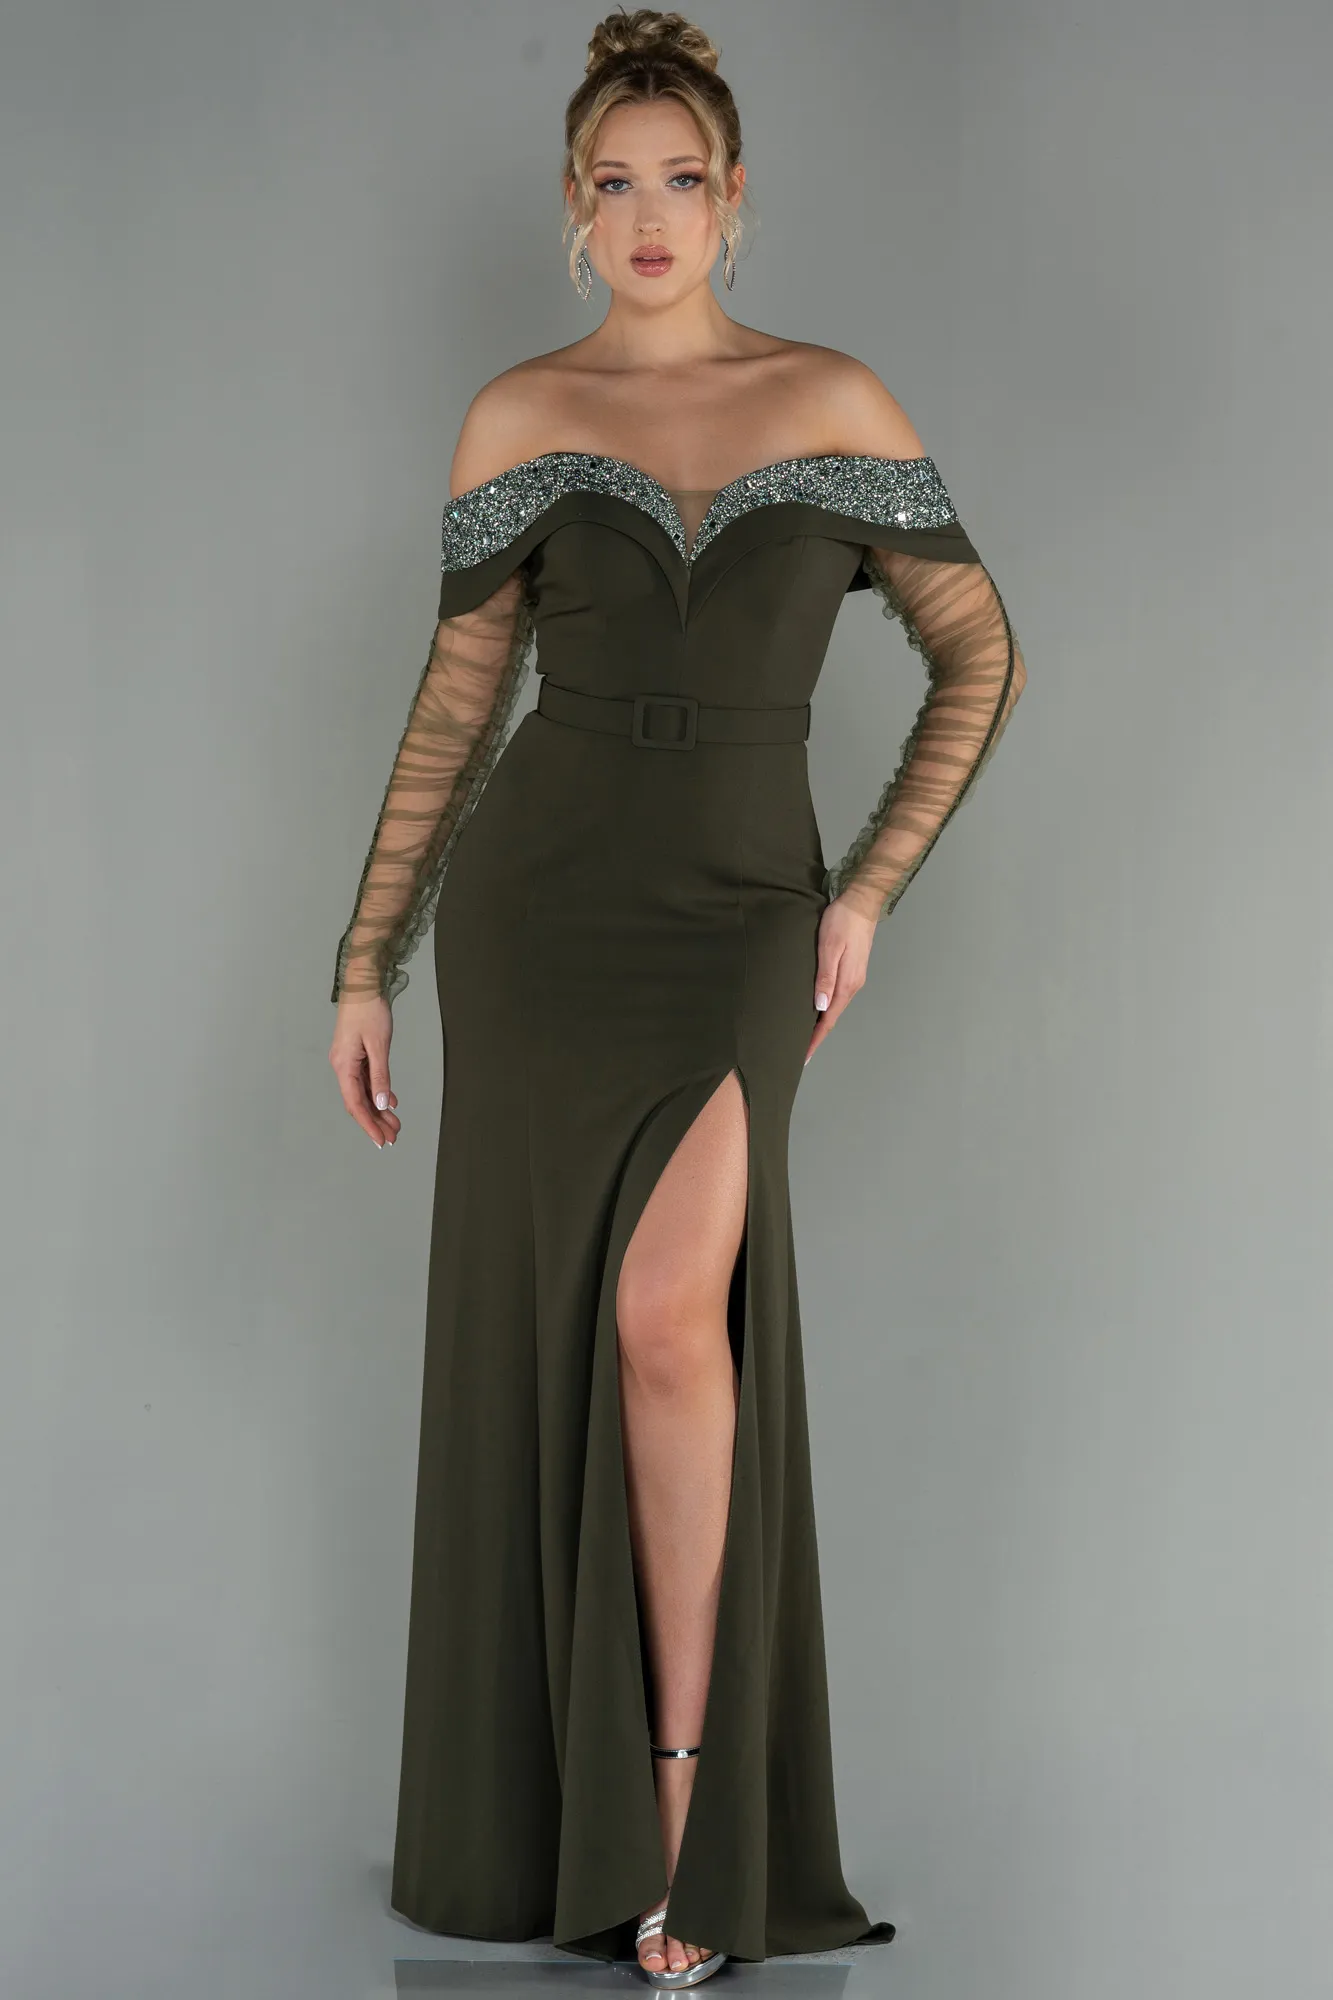 Olive Drab-Long Mermaid Prom Dress ABU2998